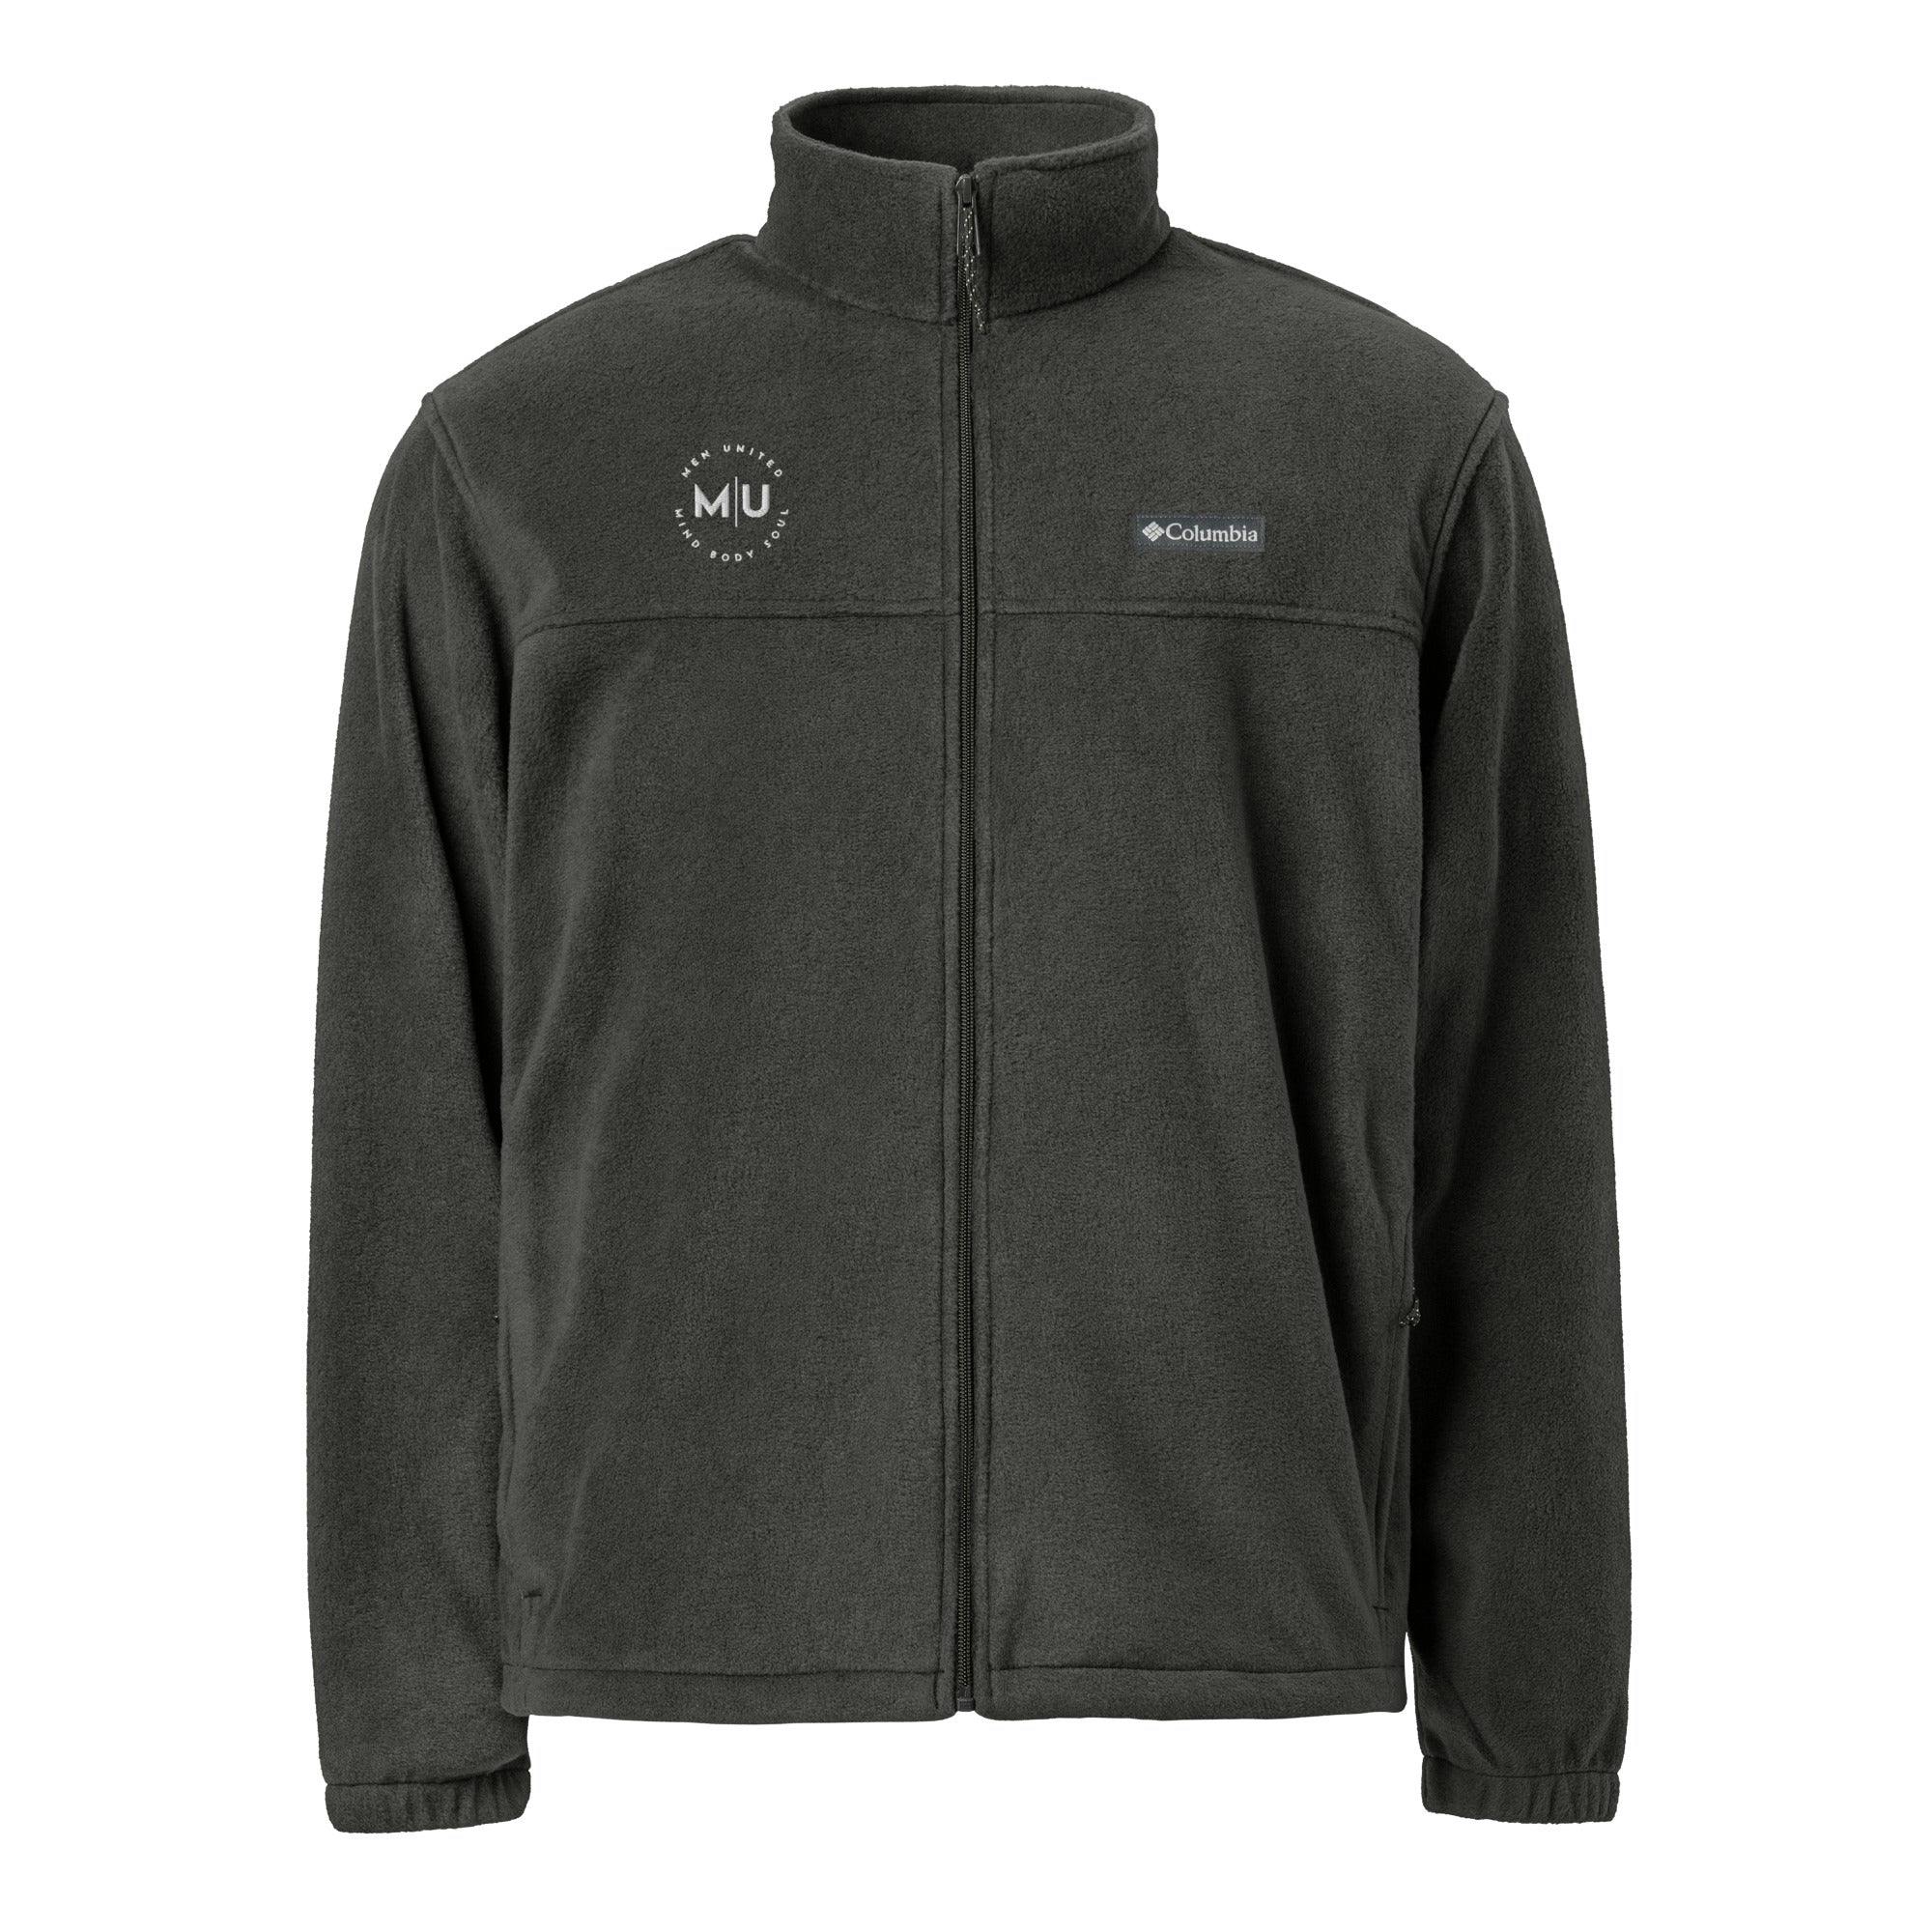 Unisex Columbia fleece jacket - unisex-columbia-fleece-jacket-charcoal-heather-front-65e0041c61cc5